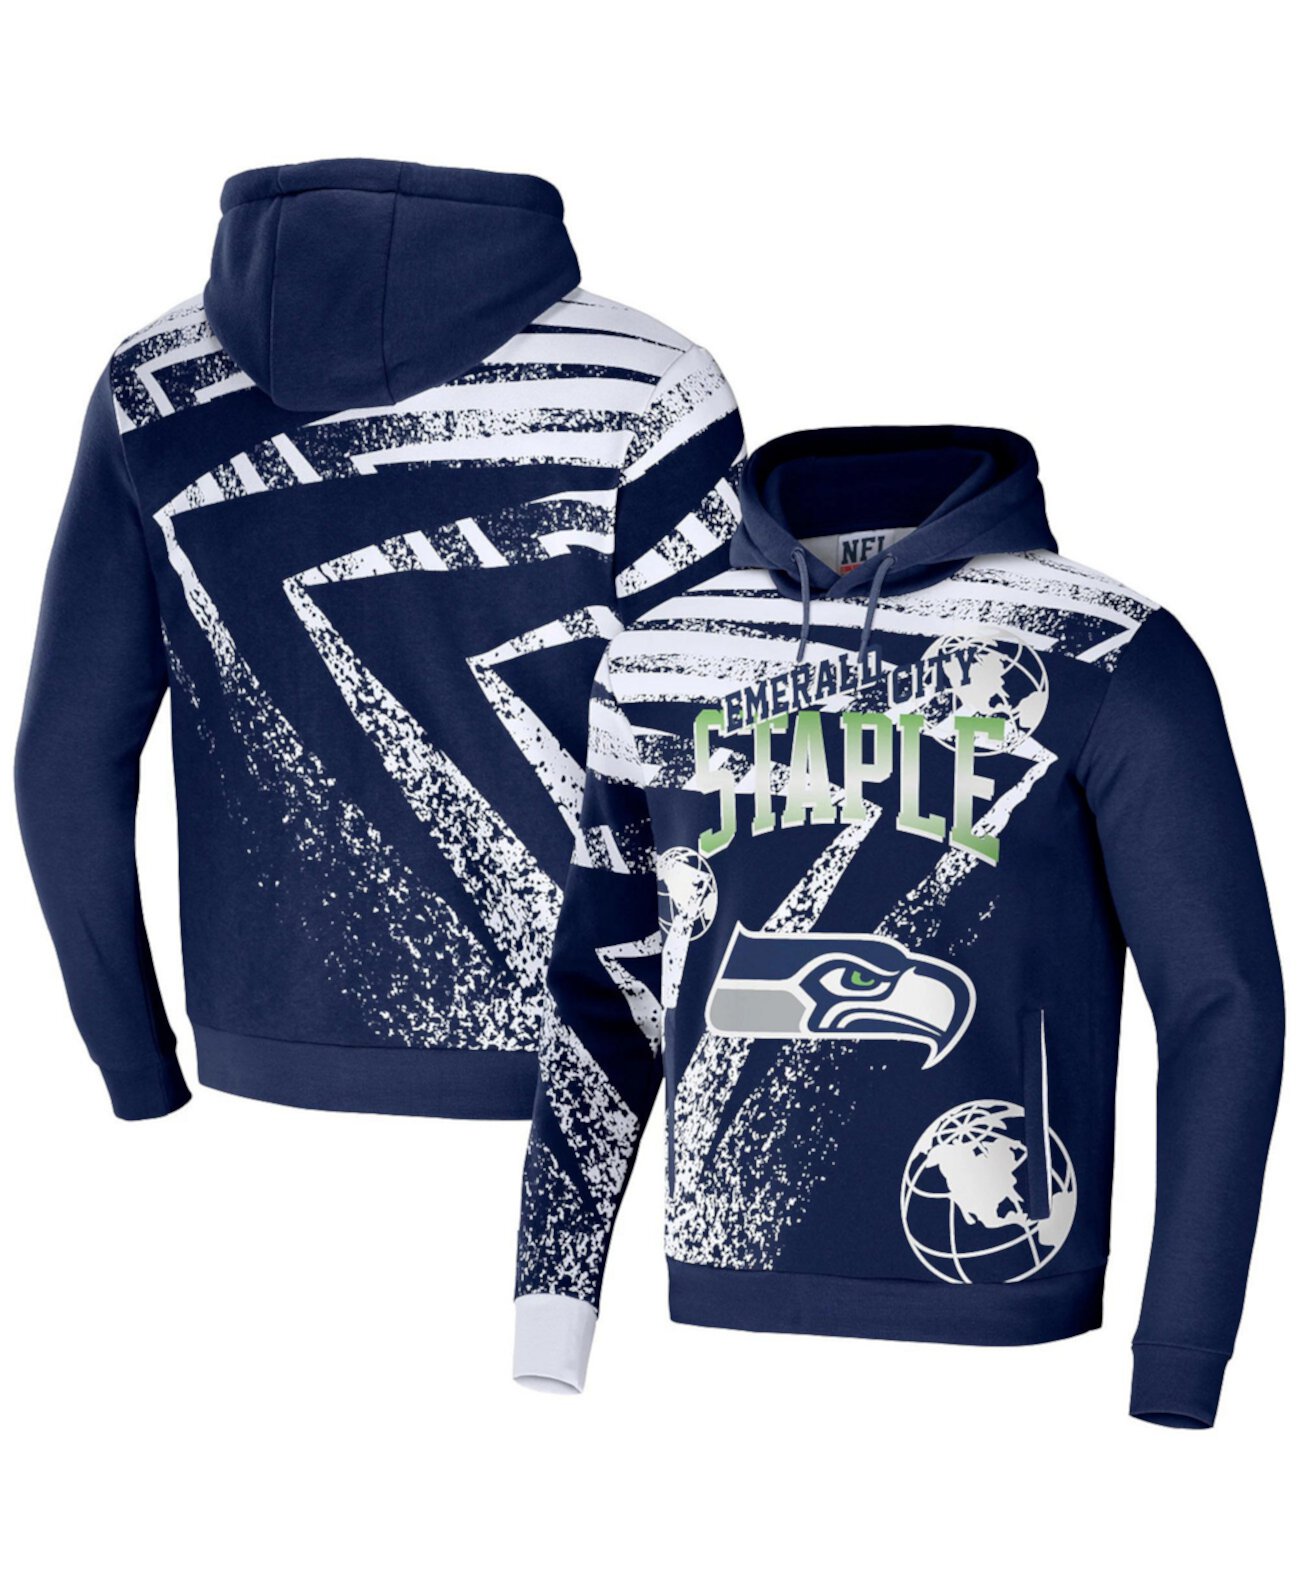 Мужской пуловер с капюшоном и надписью NFL X Staple темно-синего цвета с надписью команды Seattle Seahawks по всей поверхности NFL